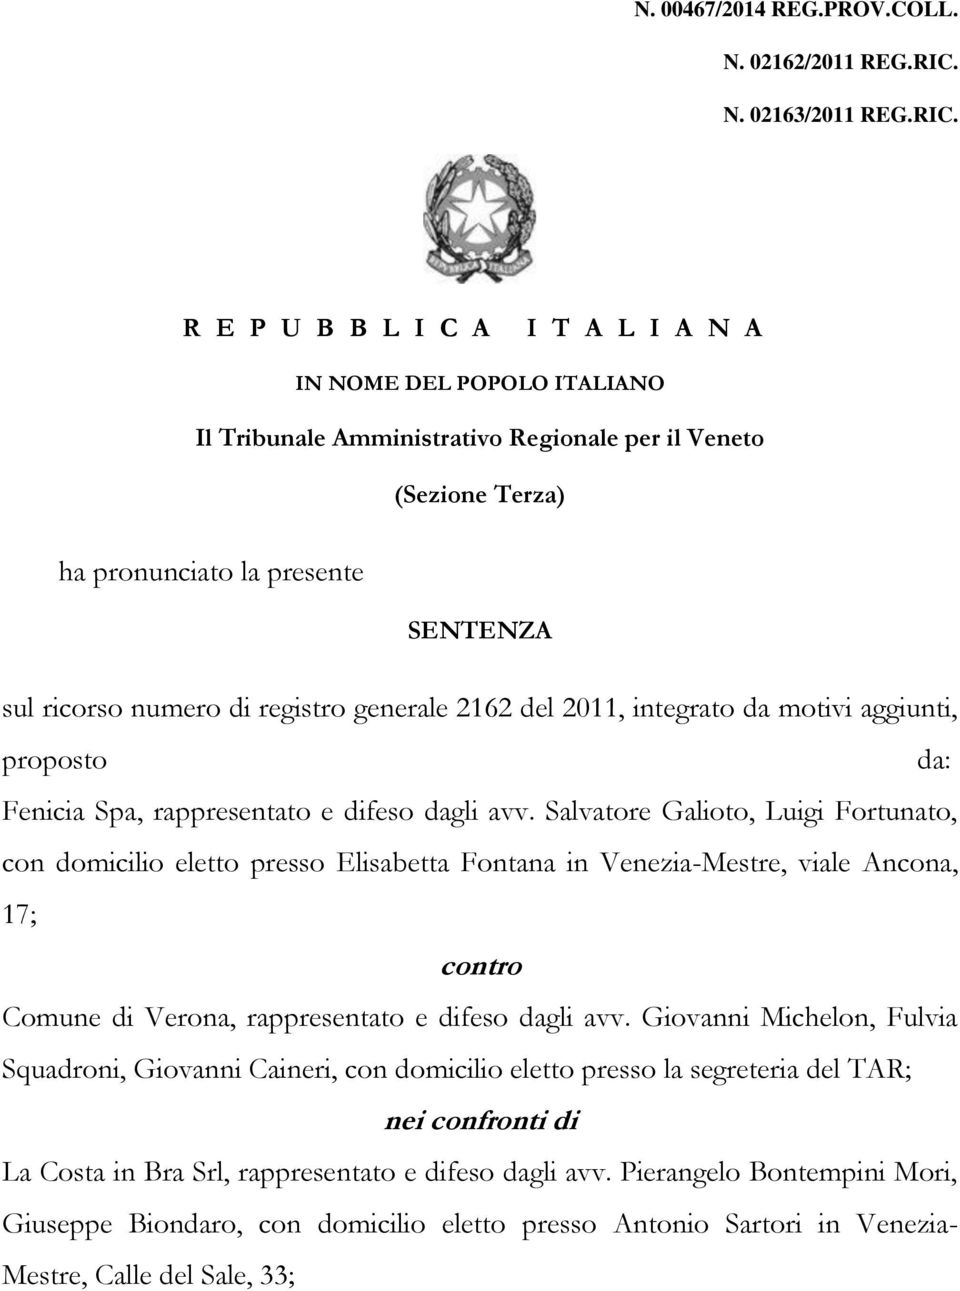 R E P U B B L I C A I T A L I A N A IN NOME DEL POPOLO ITALIANO Il Tribunale Amministrativo Regionale per il Veneto (Sezione Terza) ha pronunciato la presente SENTENZA sul ricorso numero di registro